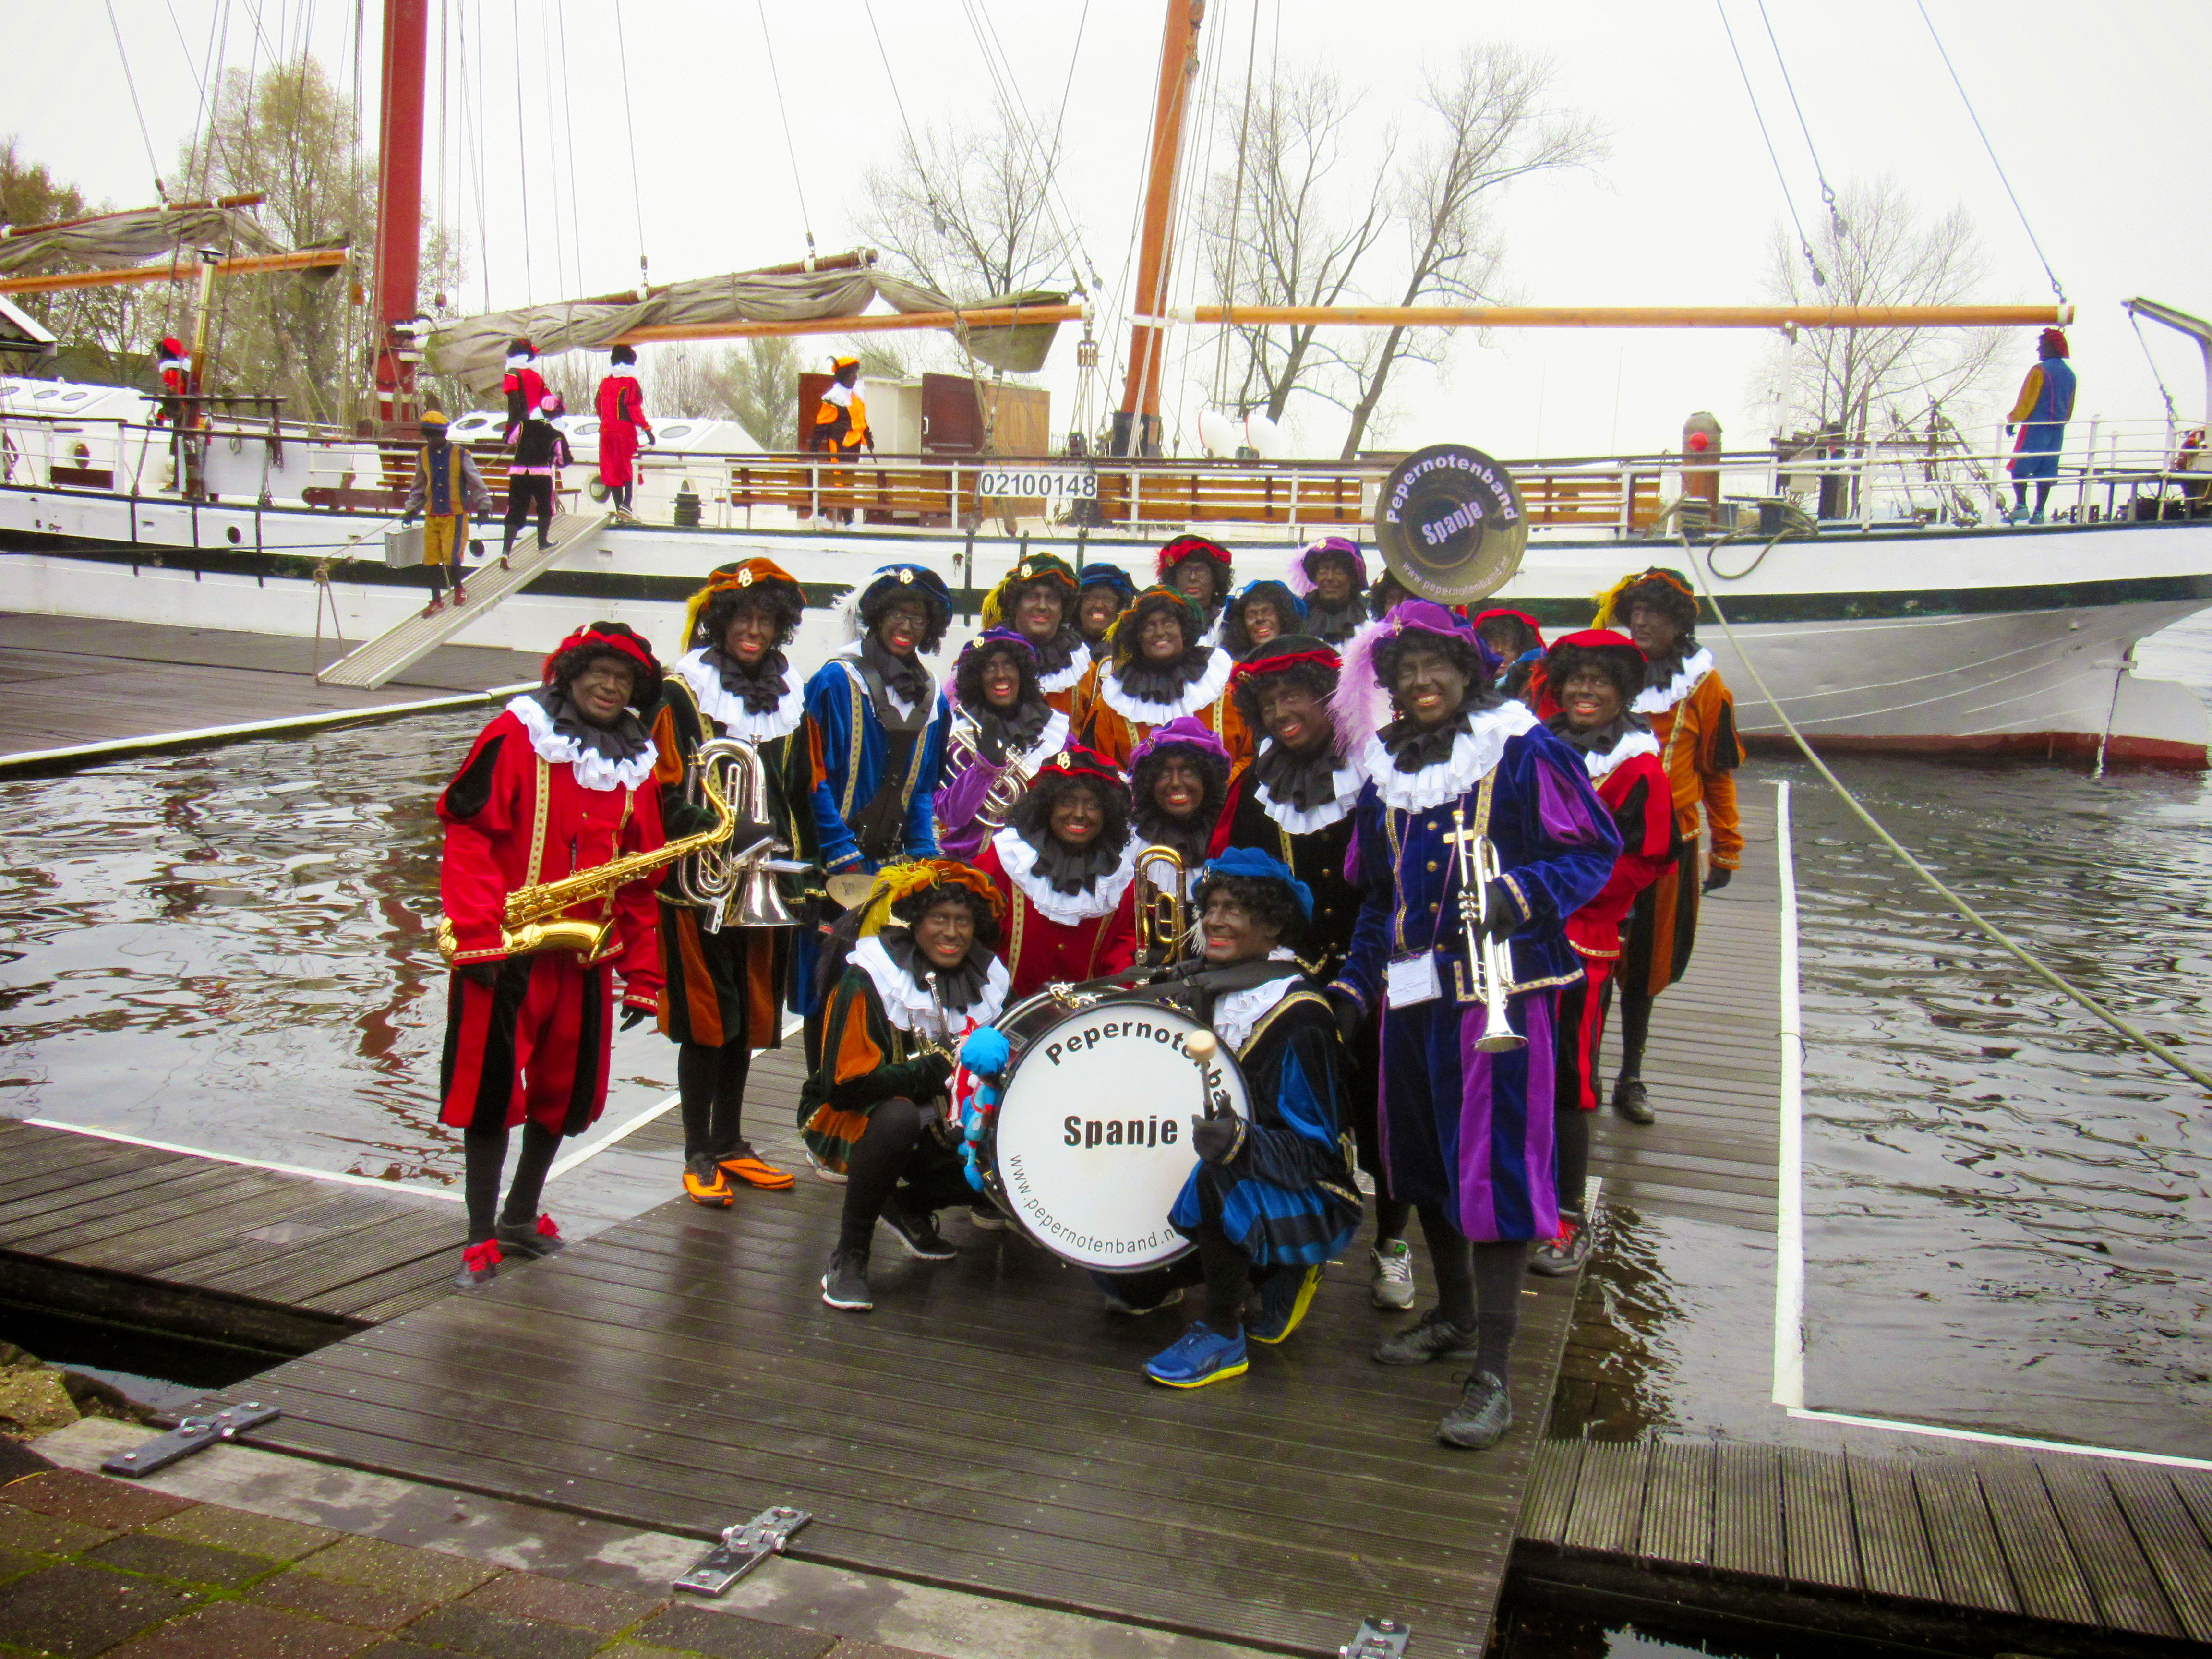 Groepsfoto Pietenband voor boot in Weesp